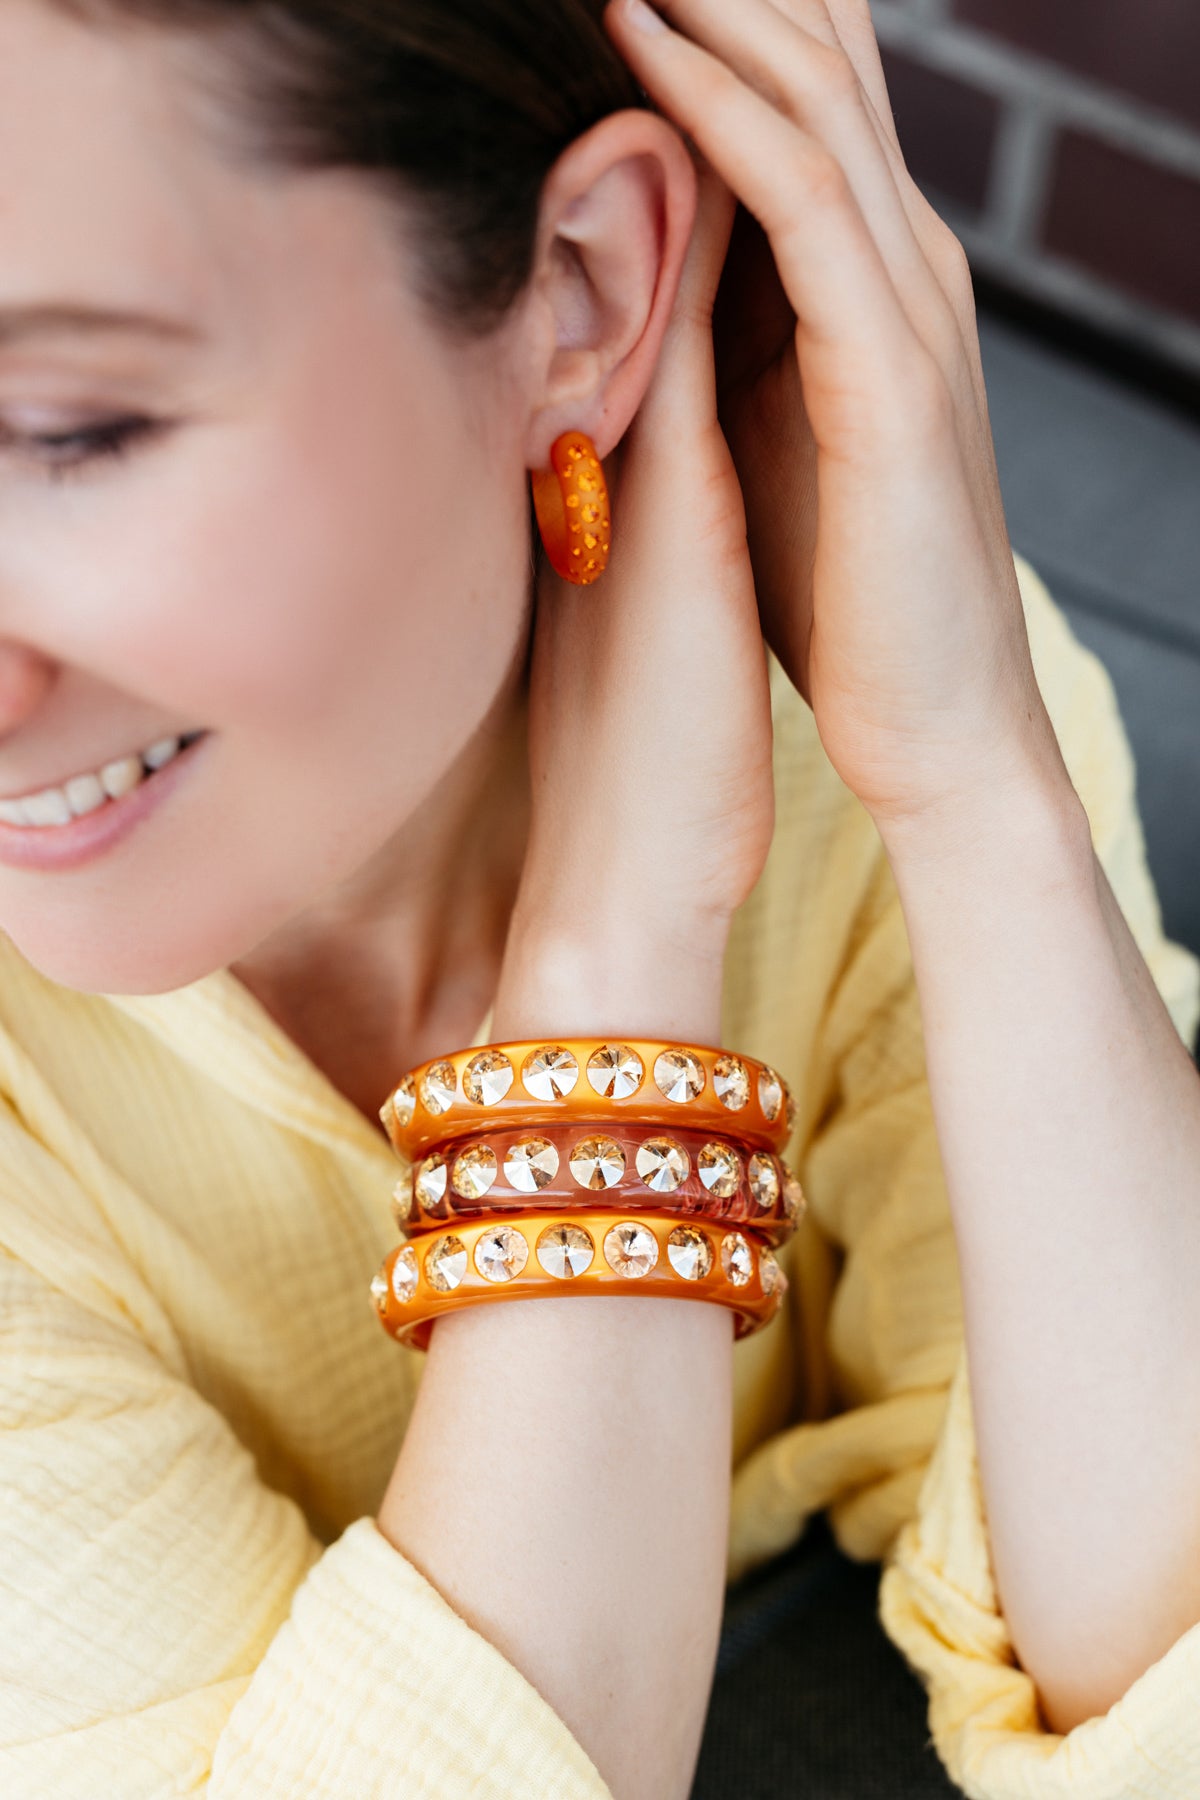 Die großen, kegelförmig geschliffenen Swarovski-Steine machen diesen Sassari-Armreifen zu einem absoluten Statement-Piece. Ein perfekter Begleiter für alle, die es klassisch und ausgefallen zugleich lieben. Orange steckt voller Energie, denn die Farbe verbindet die Wärme von Rot und das Strahlen von Gelb. Orange ist eine extravagante und extrovertierte Farbe, die sich sehr gut für besondere Akzente eignet.